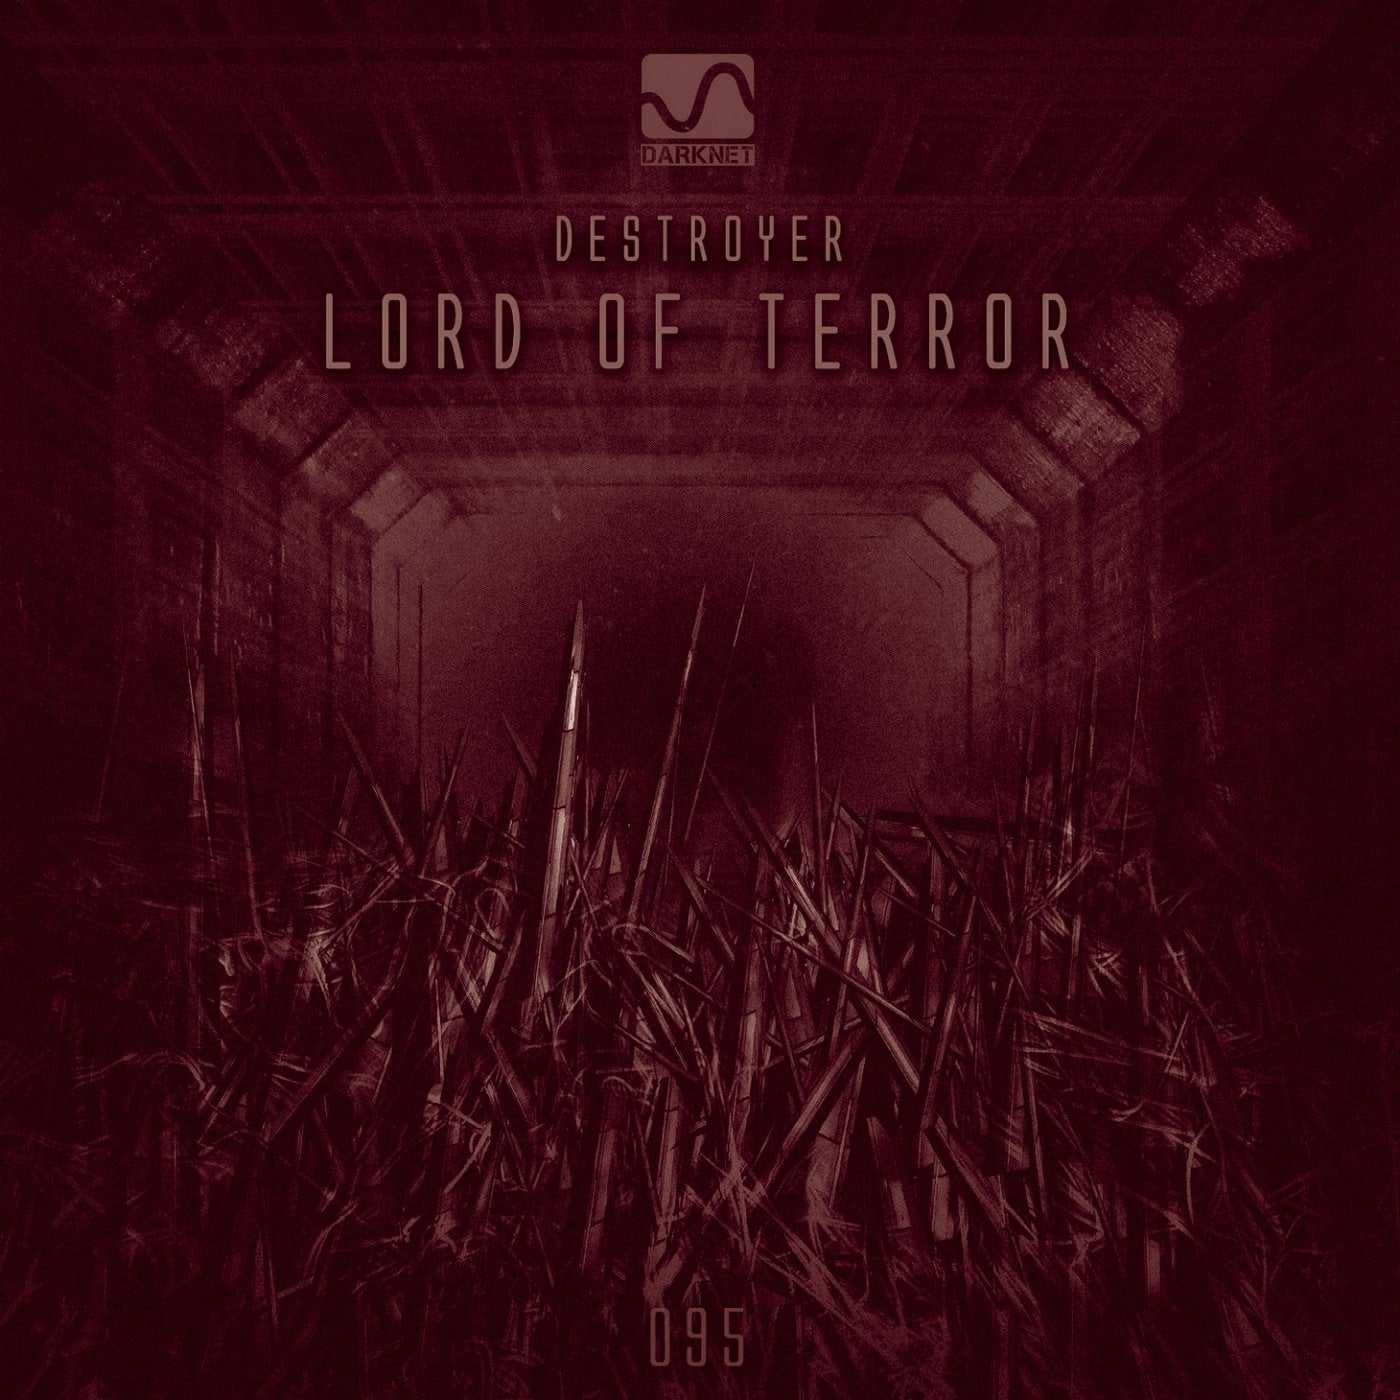 Lord of Terror